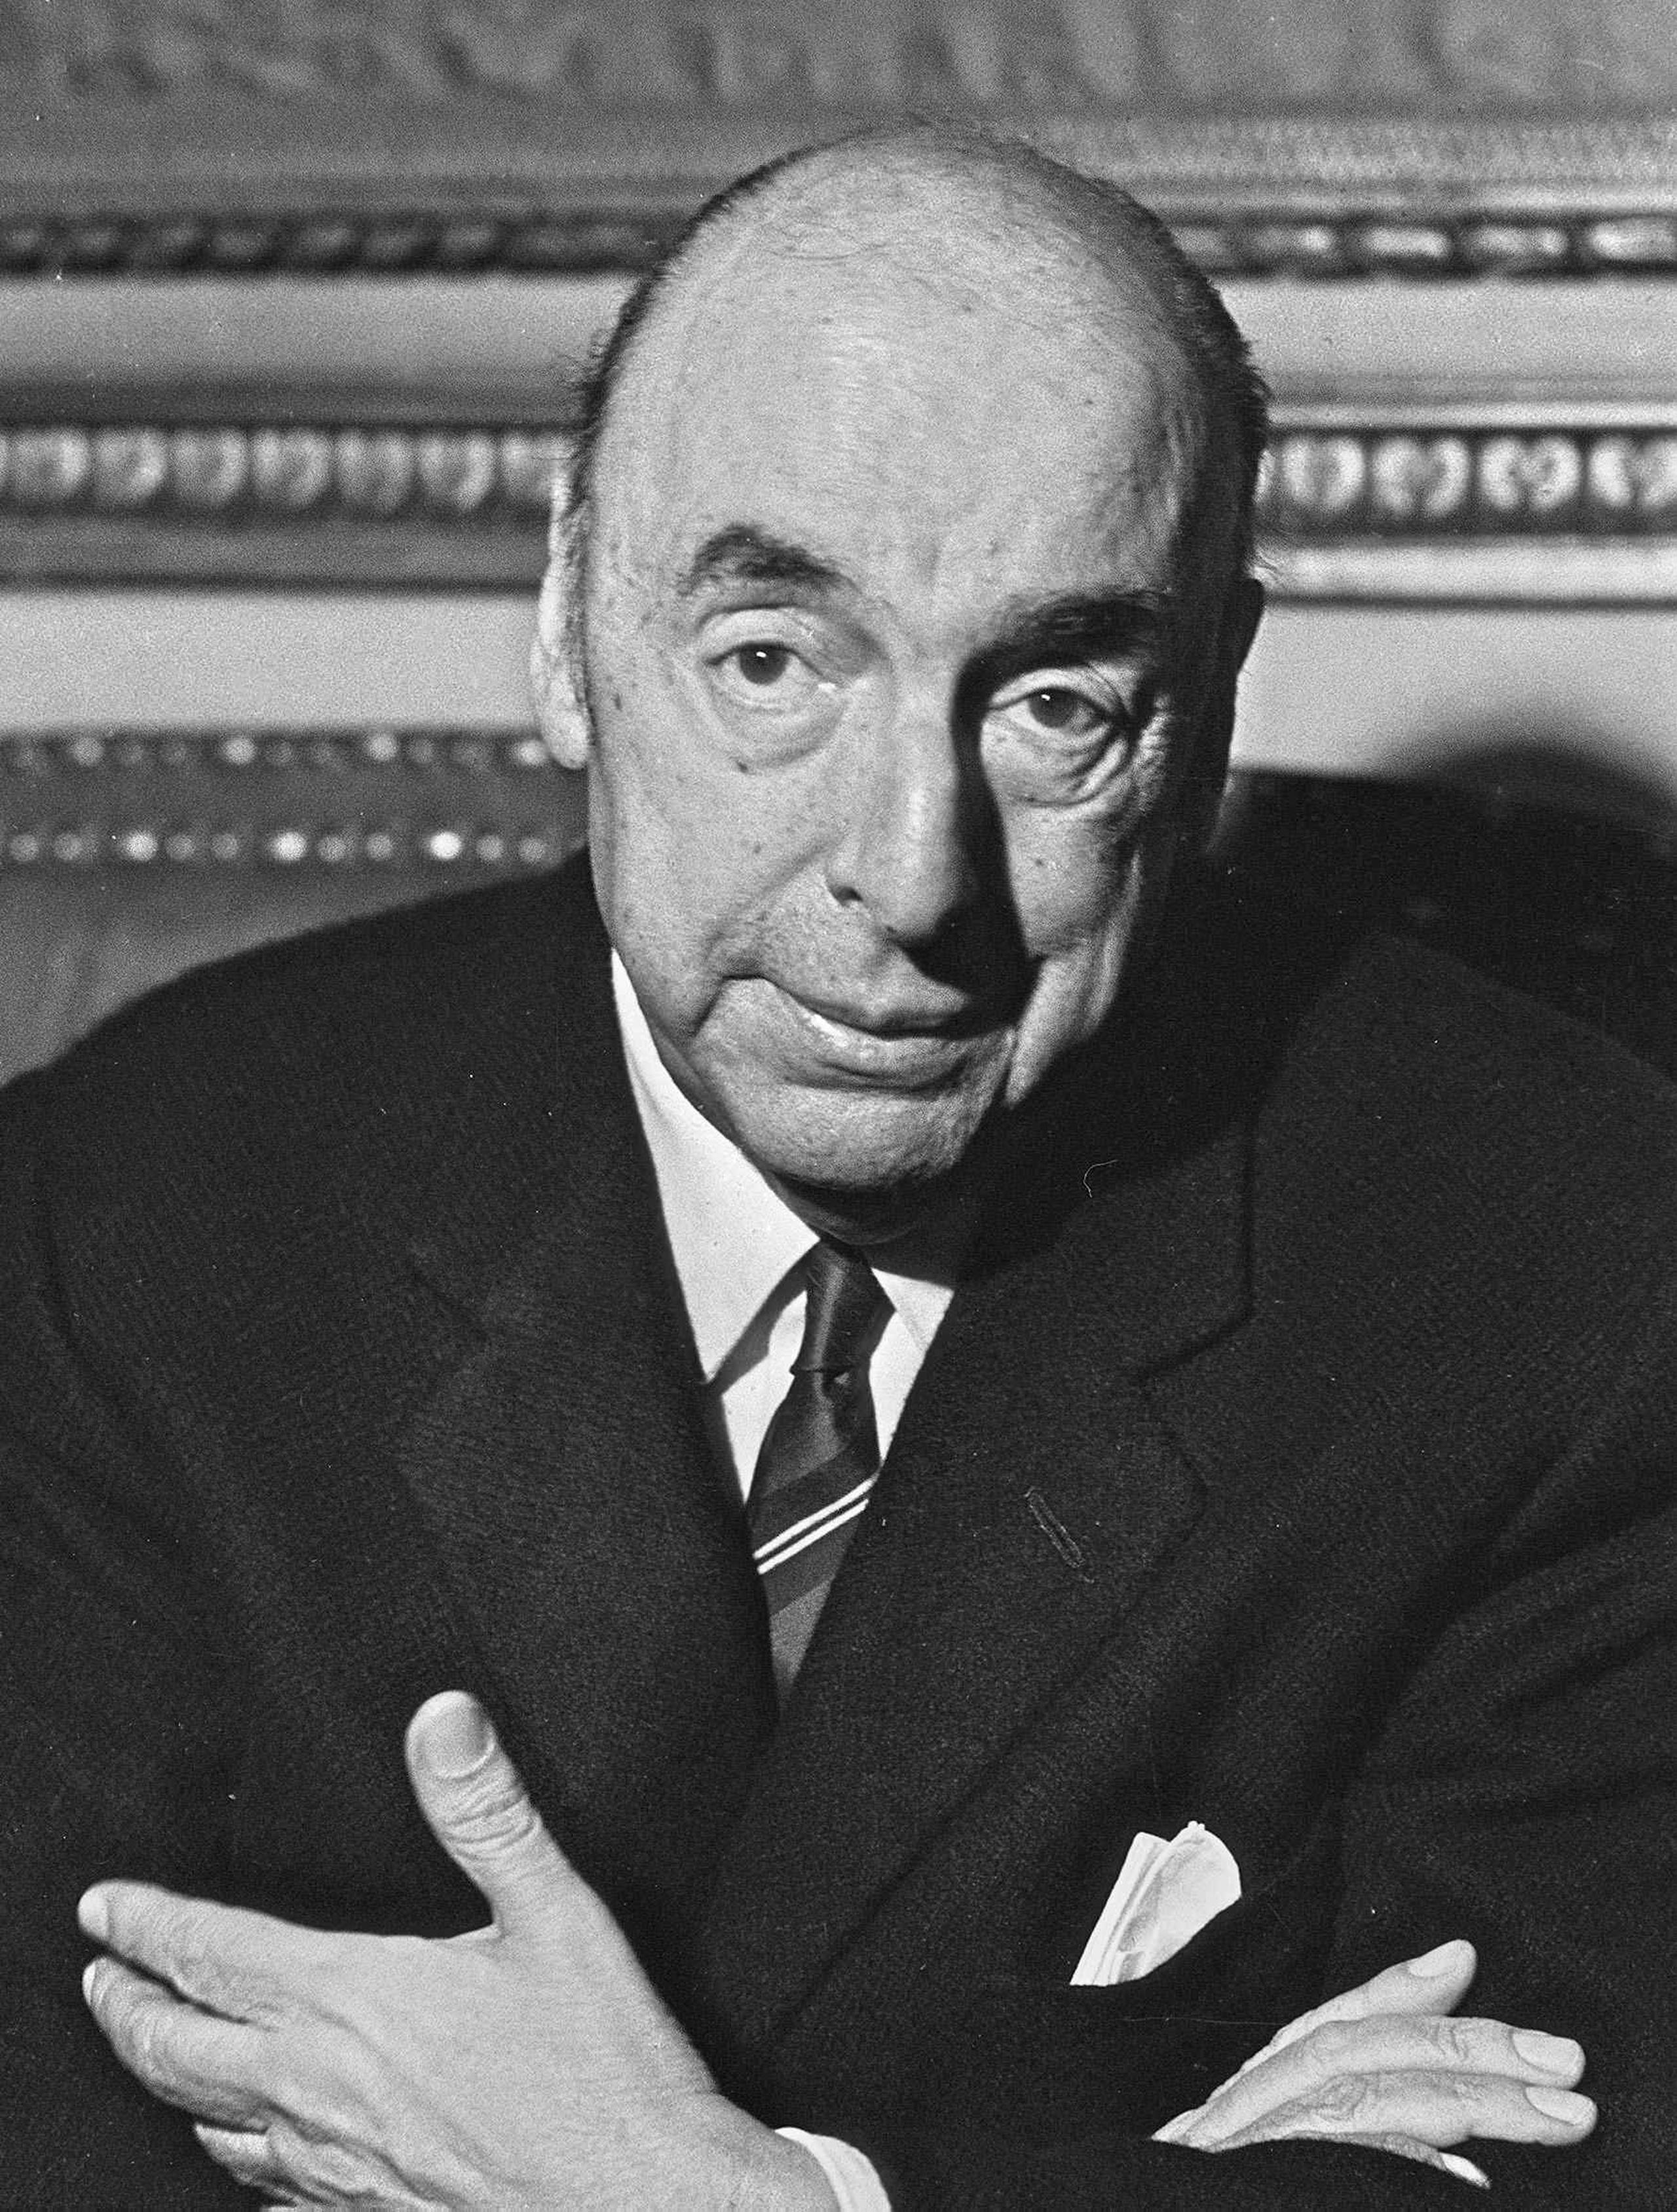 Se deberá esclarecer si Pablo Neruda falleció por cáncer de próstata avanzado o si fue envenenado.